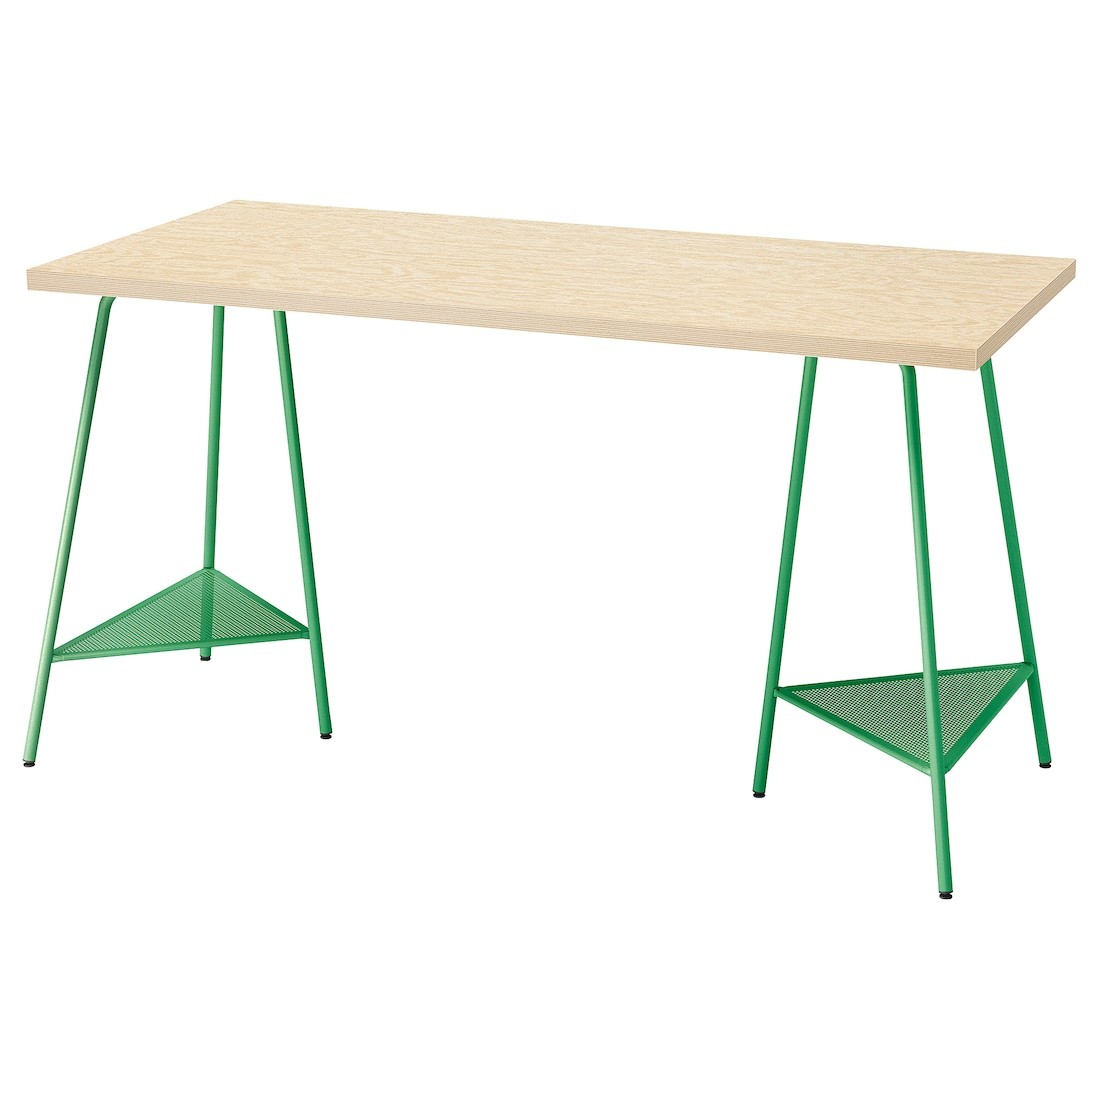 MITTCIRKEL / TILLSLAG Письмовий стіл, яскравий сосновий/зелений ефект, 140x60 см